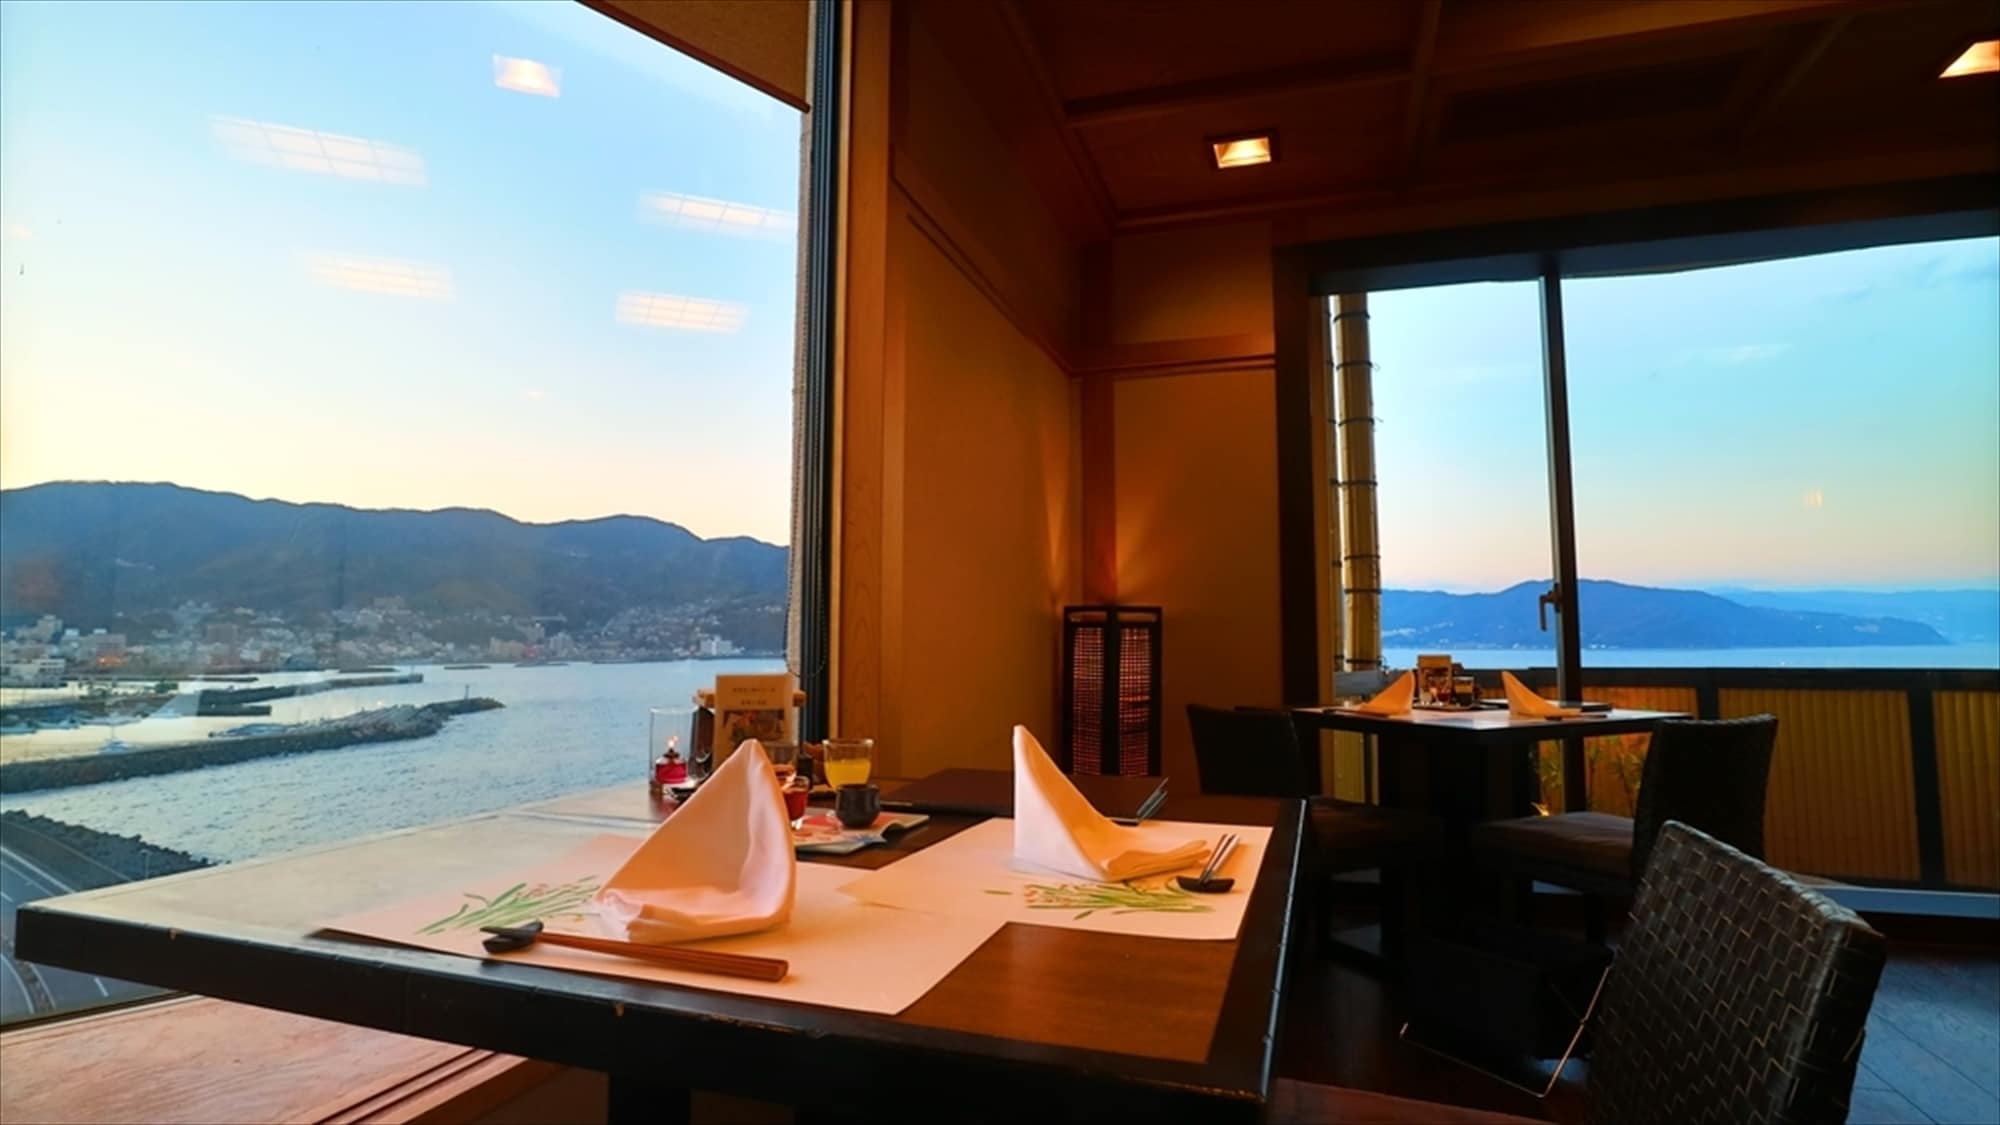 [Restoran di lantai 9-Aomi-] Nikmati makanan Anda sambil melihat pemandangan Sagami Nada yang menakjubkan dari jendela.